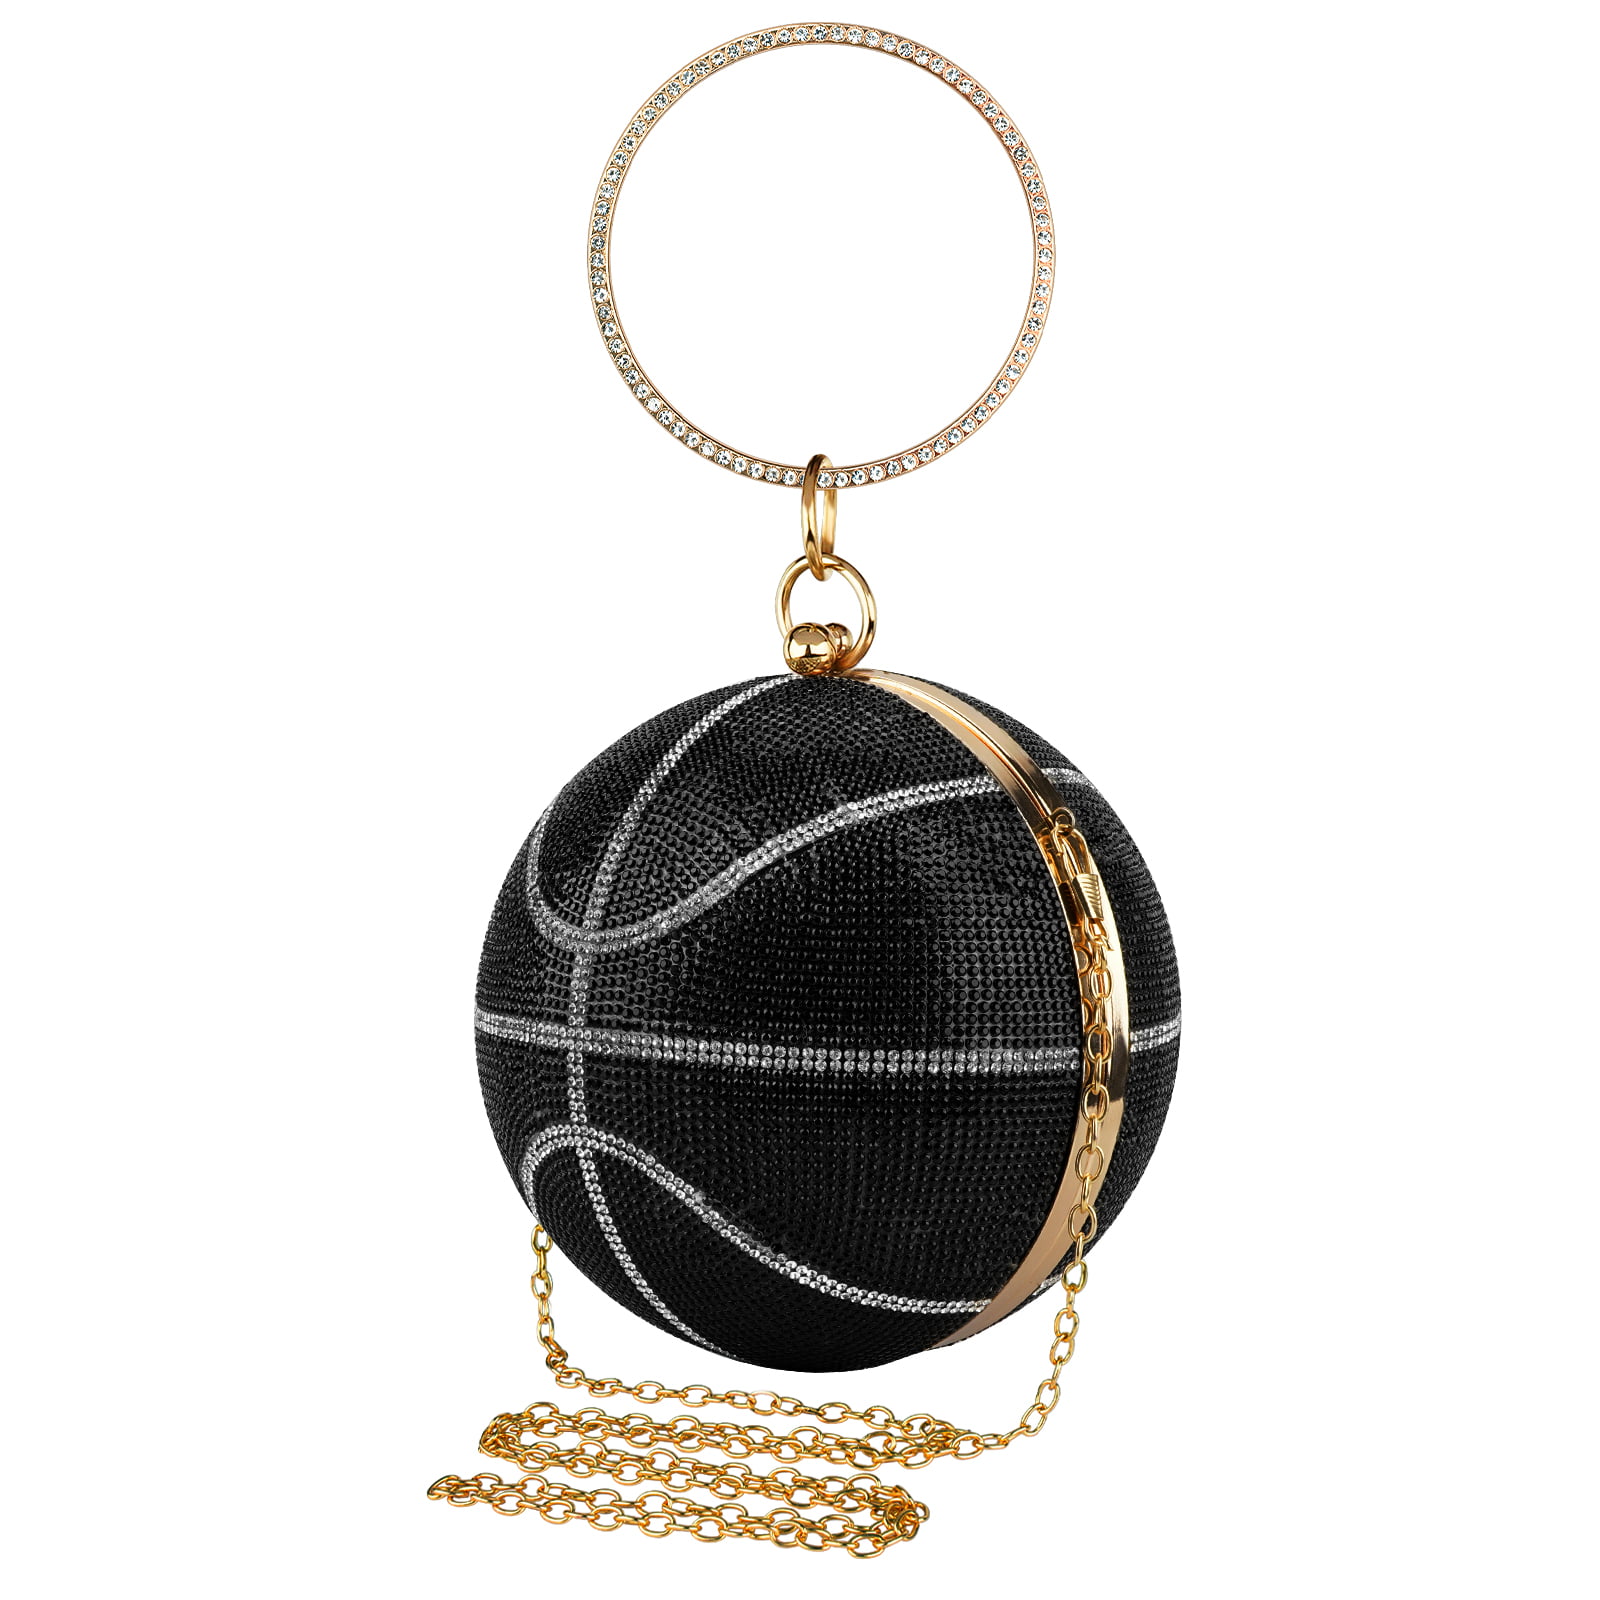 Rhinestone Basketball Purse for Women Small Round Ball Crystal Evening Bag Glitter Clutch Crossbody Shoulder Handbag for Wedding Party Black 6a6a5d44 15fa 4d5e 88fc 65cfc25c4272.9f1475751440c83da0ab6265eed5af21